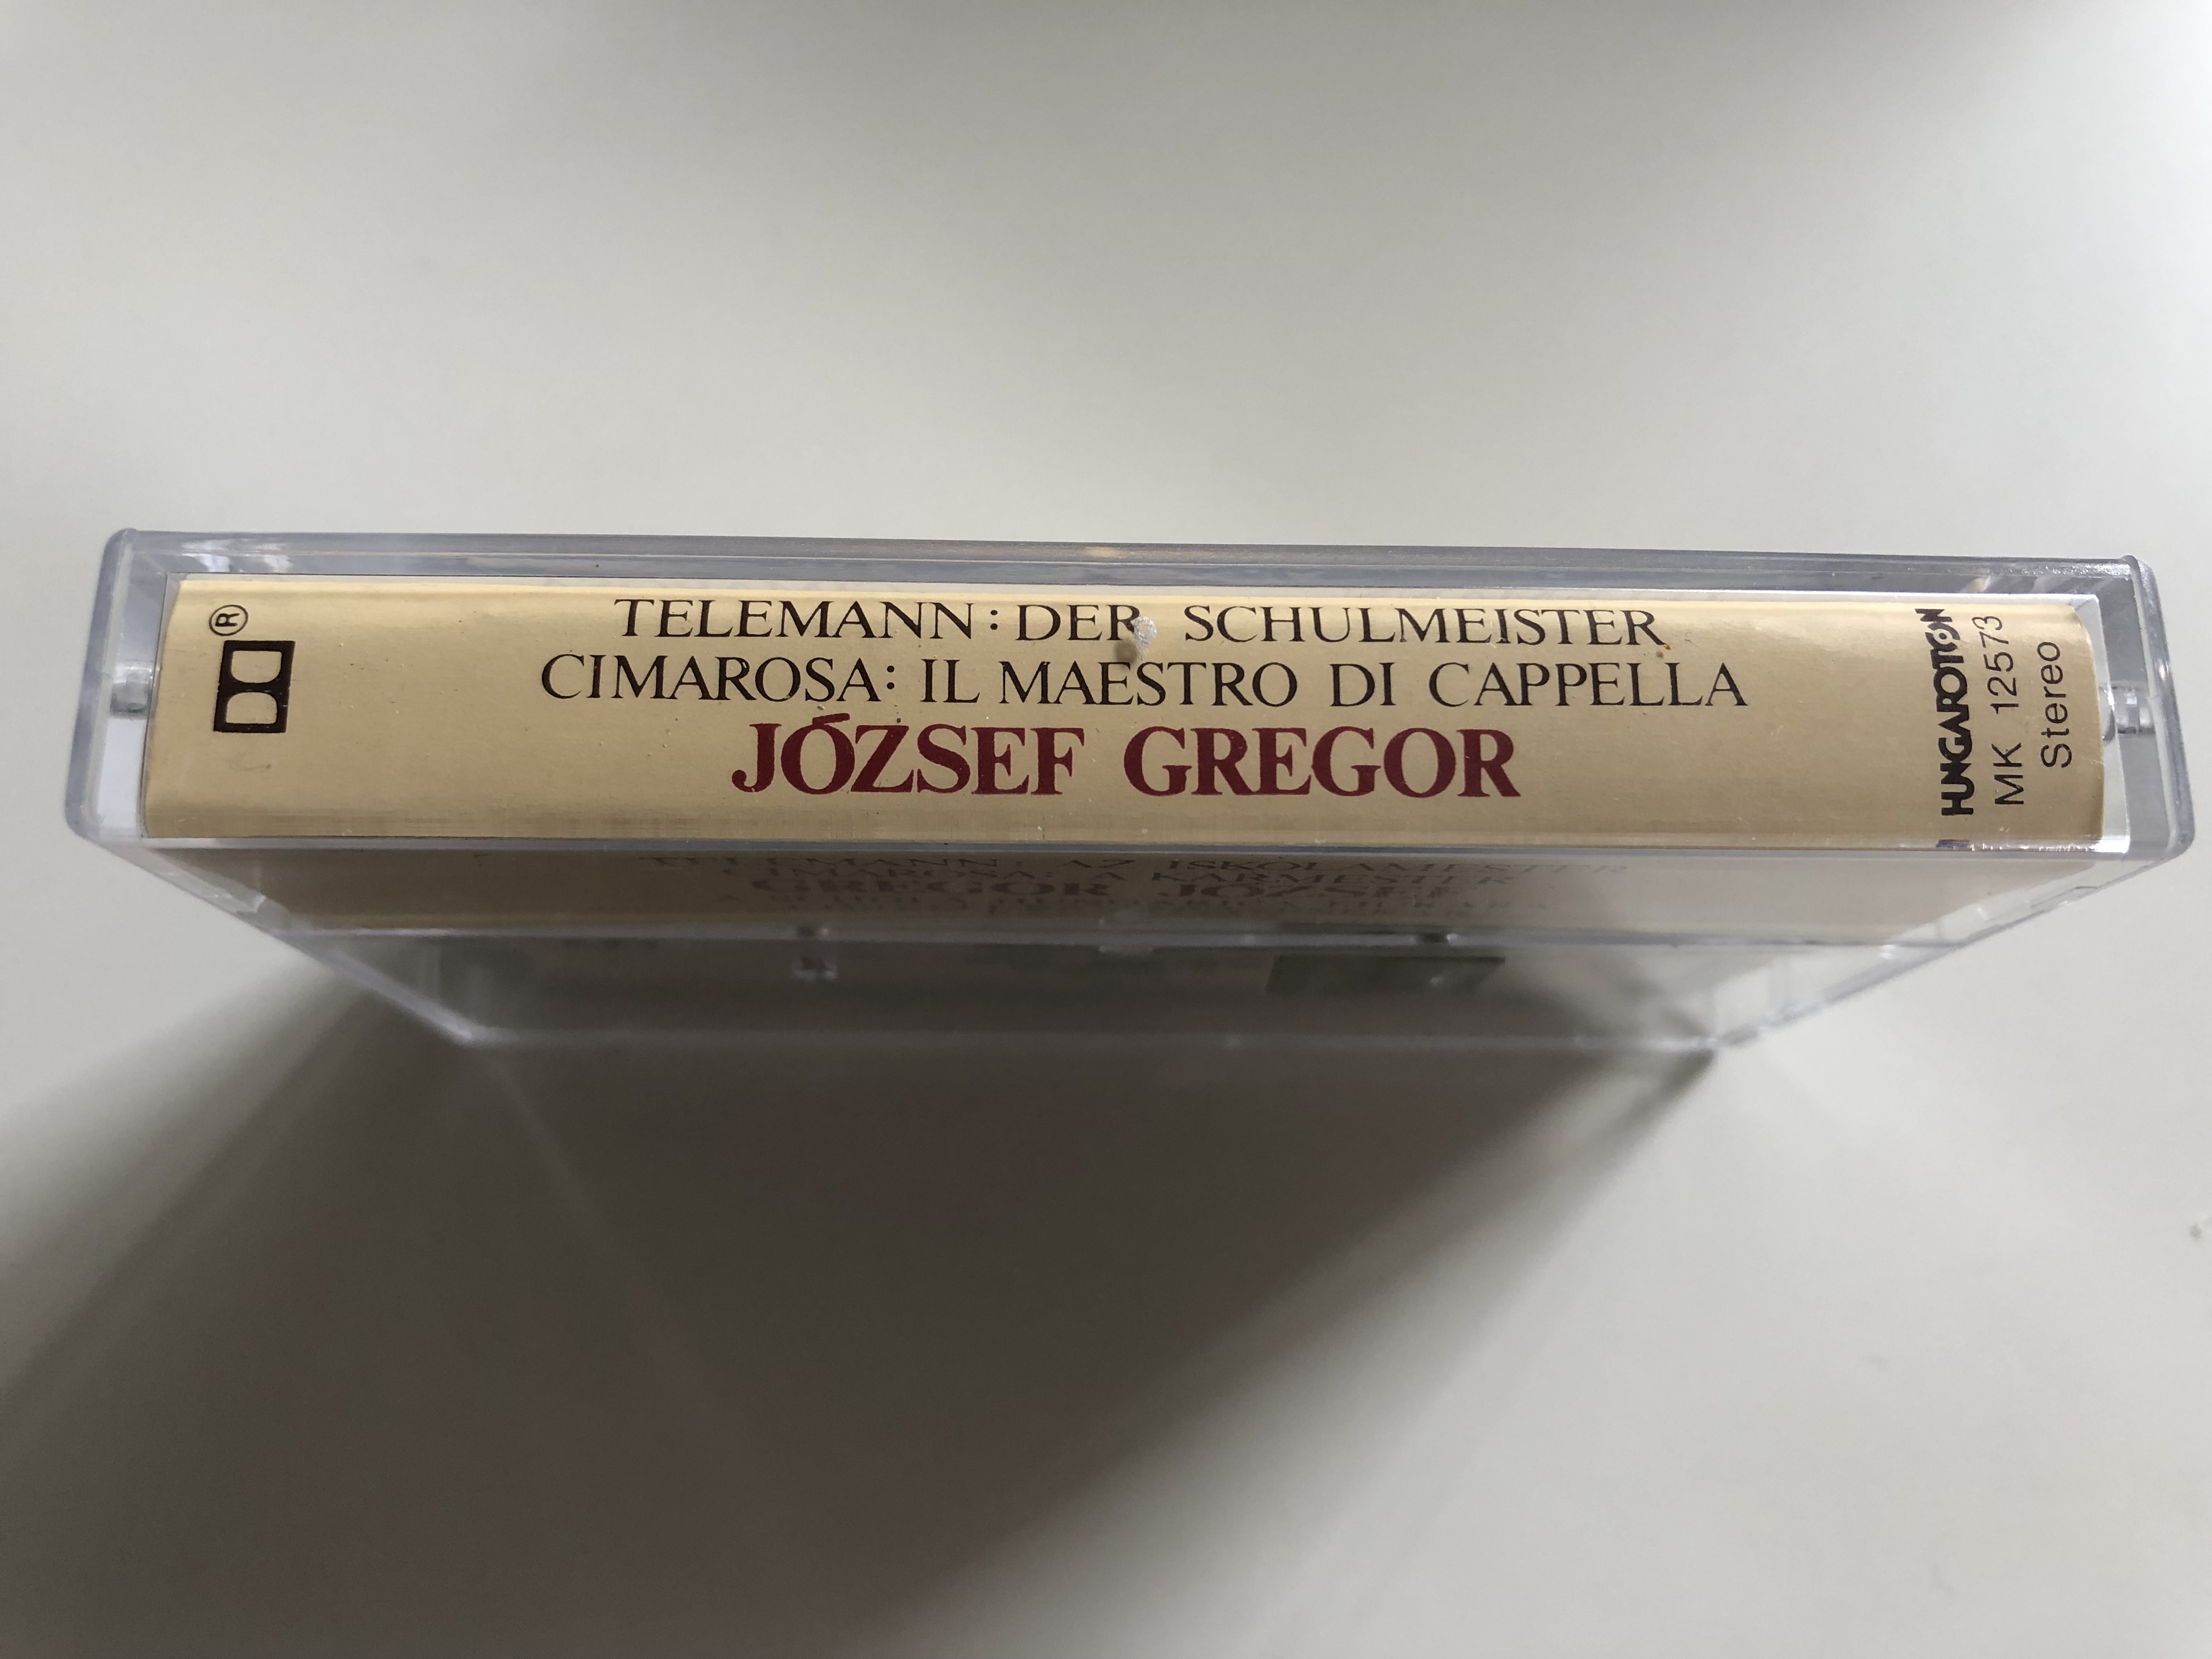 telemann-der-schulmeister-cimarosa-il-maestro-di-cappella-j-zsef-gregor-the-boys-of-schola-hungarica-corelli-chamber-orchestra-conducted-tam-s-p-l-hungaroton-cassette-stereo-mk-1257-4-.jpg